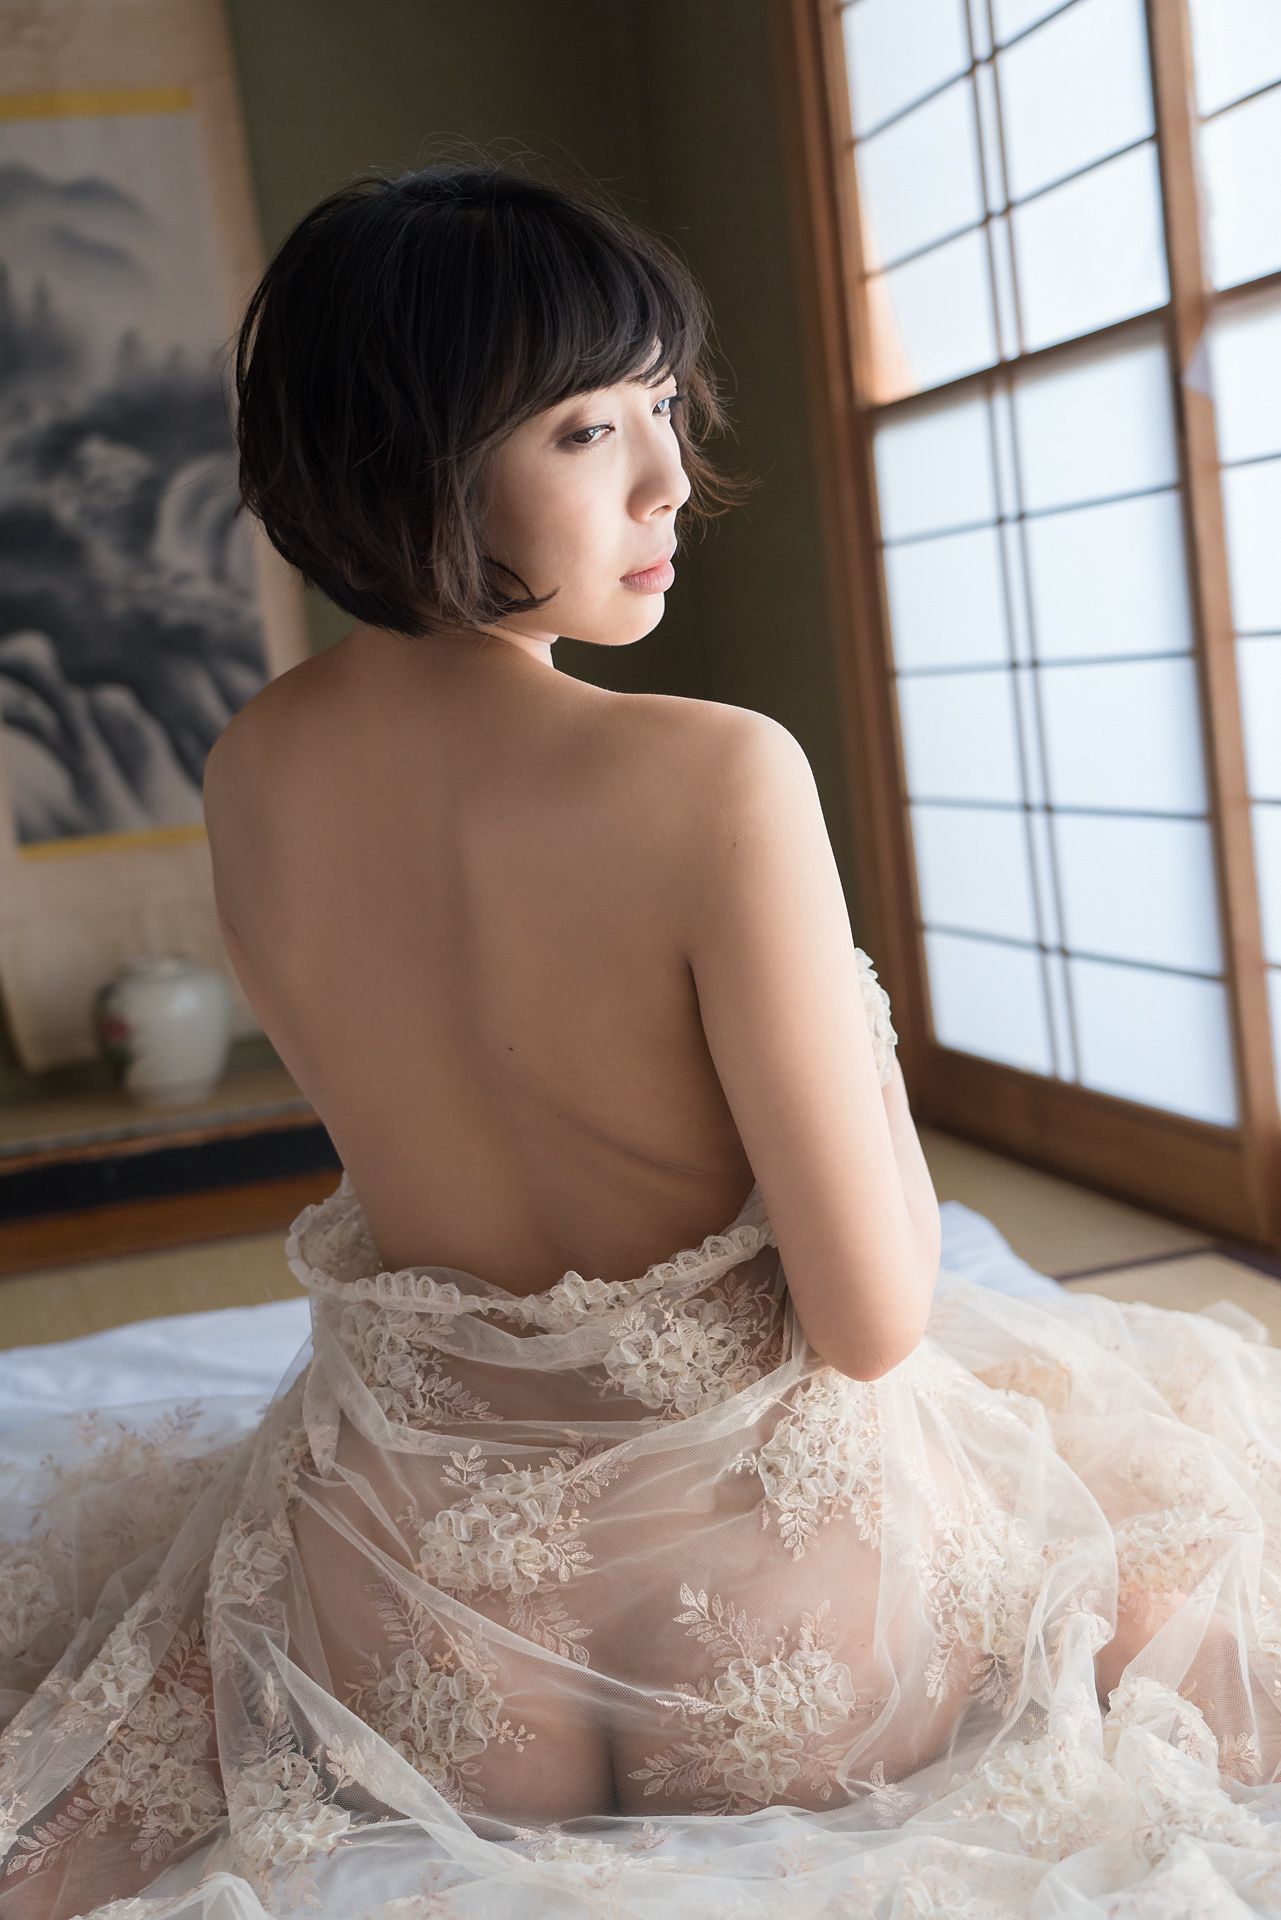 [Minisuka.tv] 麻倉まりな Marina Asakura - 蕾丝人体诱惑巨乳-第22张美女图片